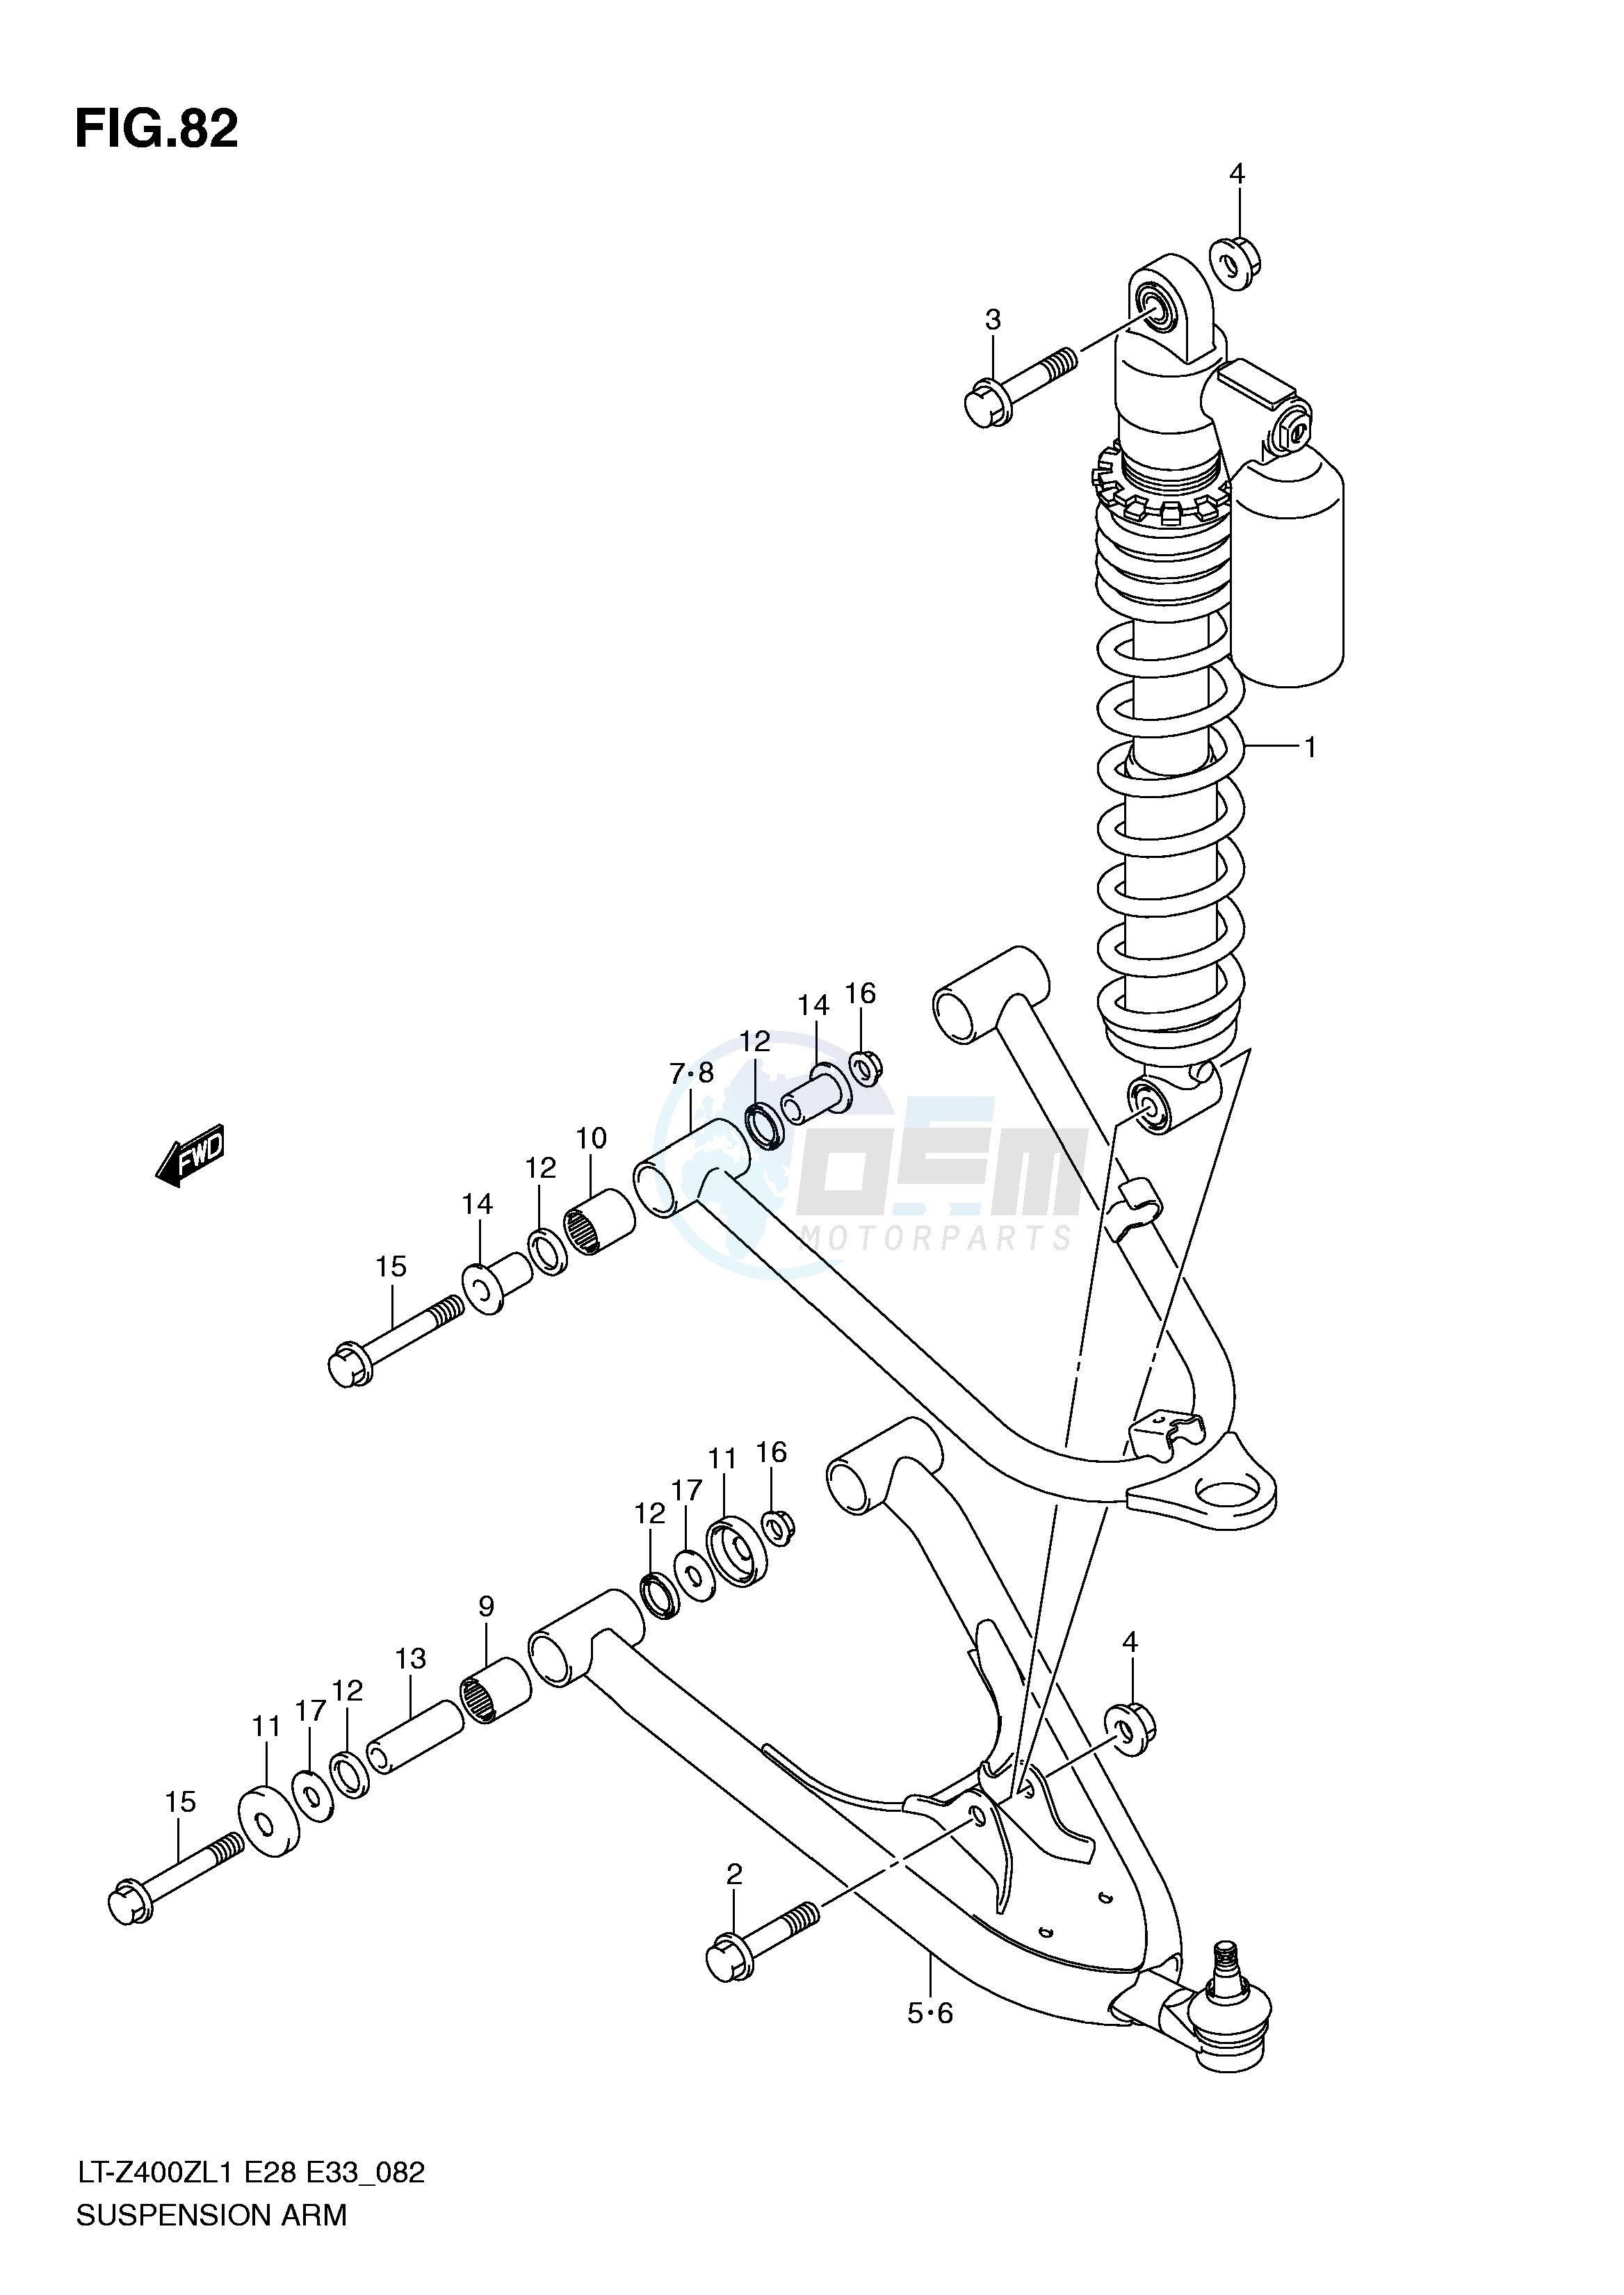 SUSPENSION ARM (LT-Z400L1 E33) blueprint